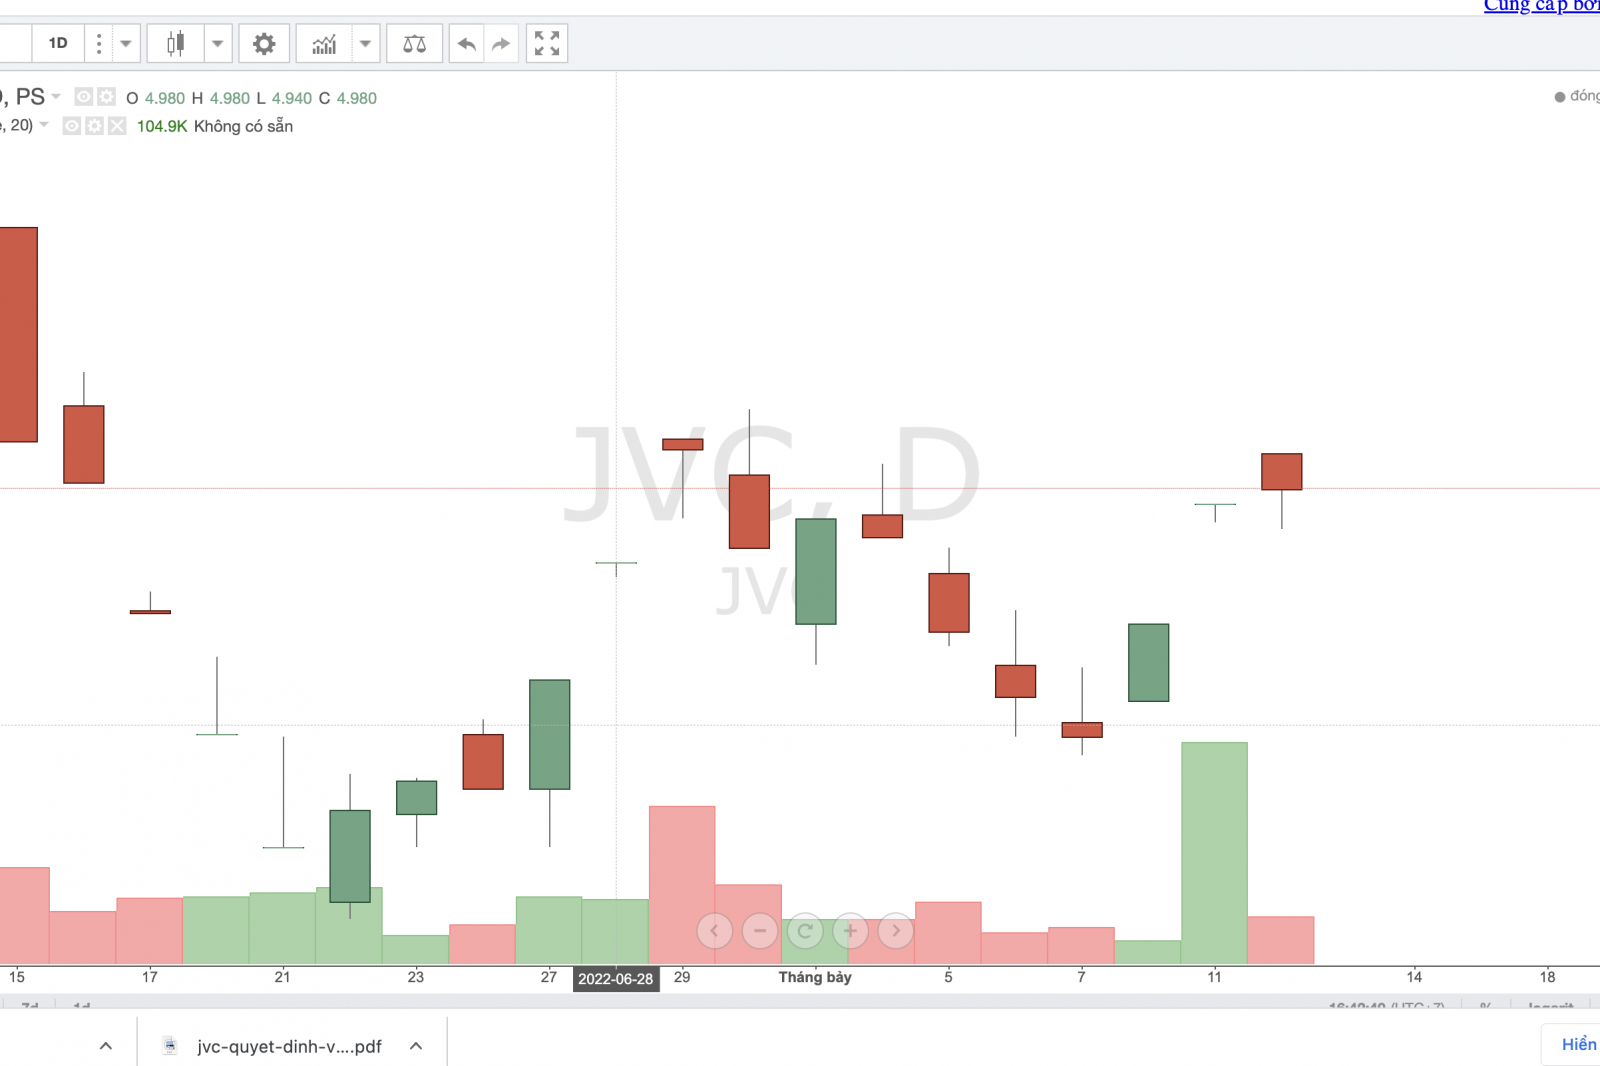 Cổ phiếu JVC rơi về vùng đáy thấp nhất nhiều năm qua dù Công ty vẫn tiếp tục tái cơ cấu